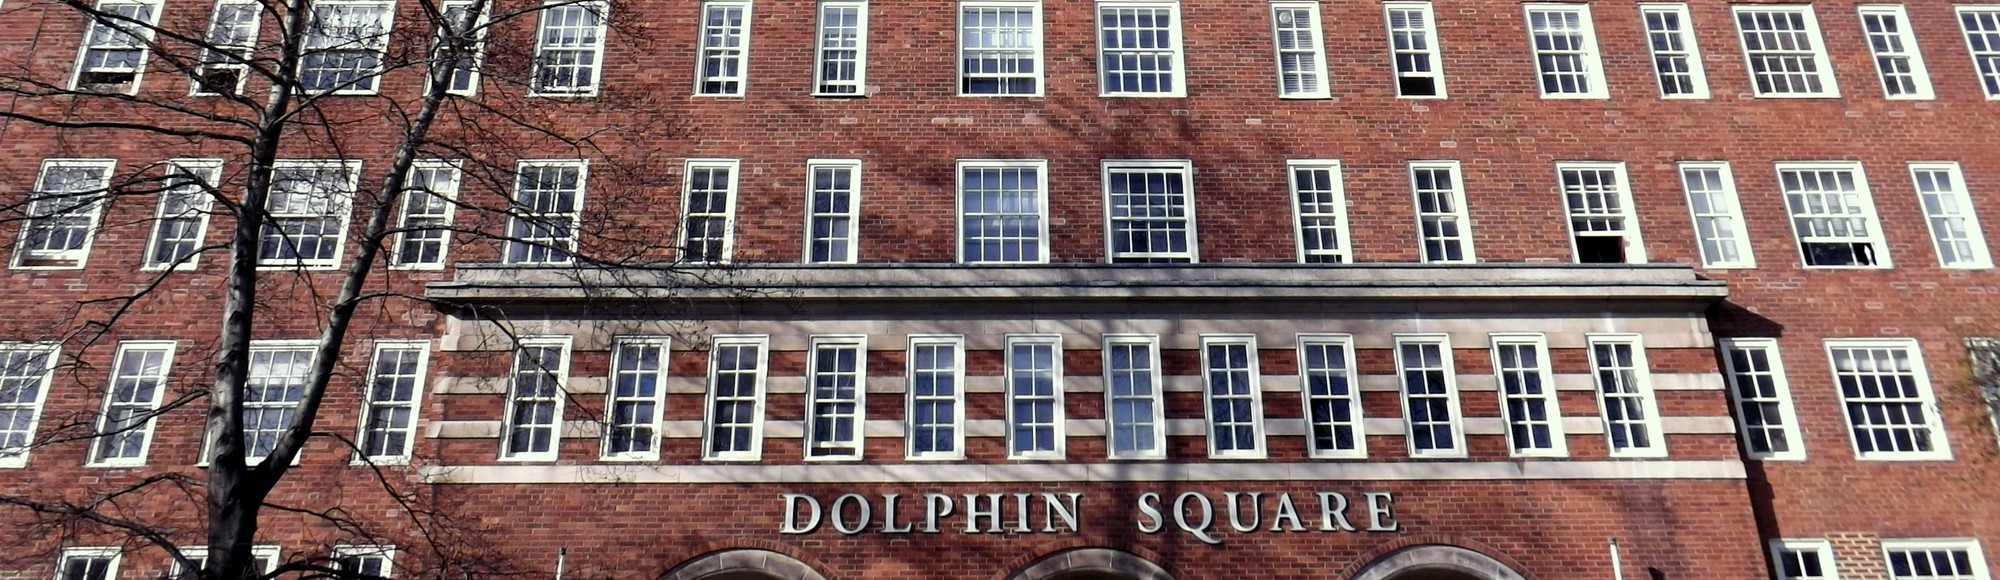 dolphin square